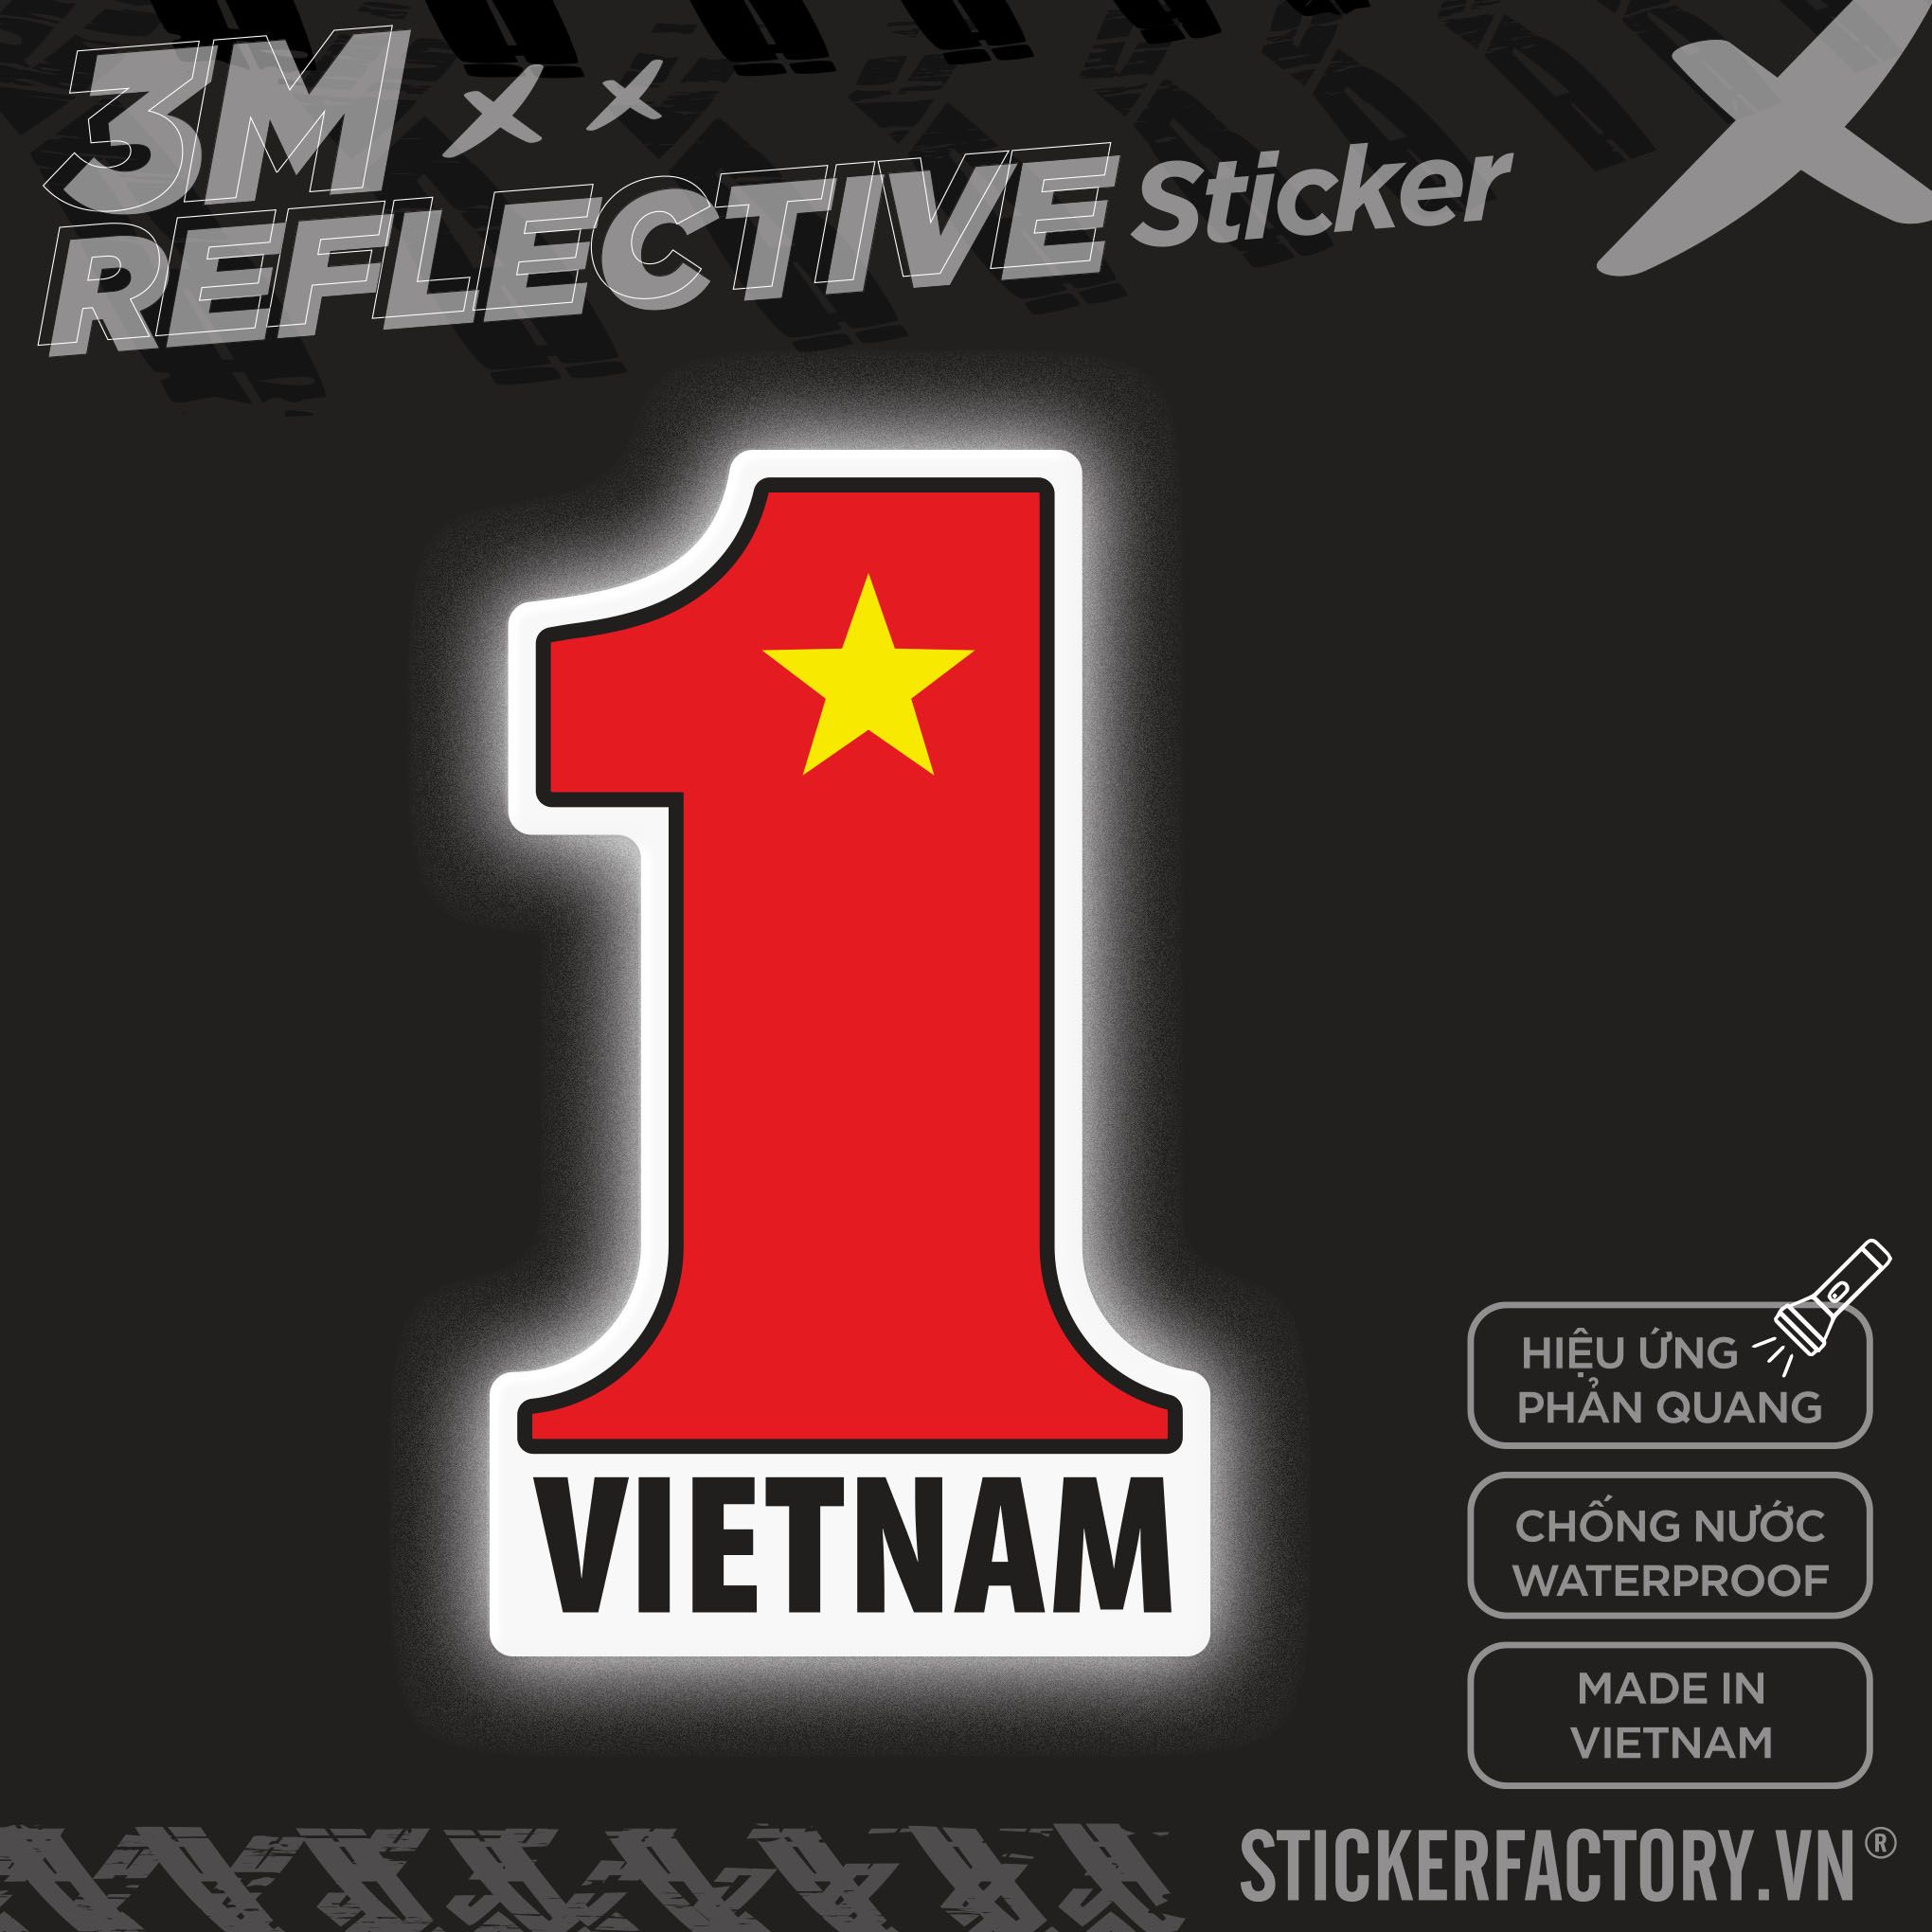 VIETNAM FLAG NUMBER 1 3M - Reflective Sticker Die-cut